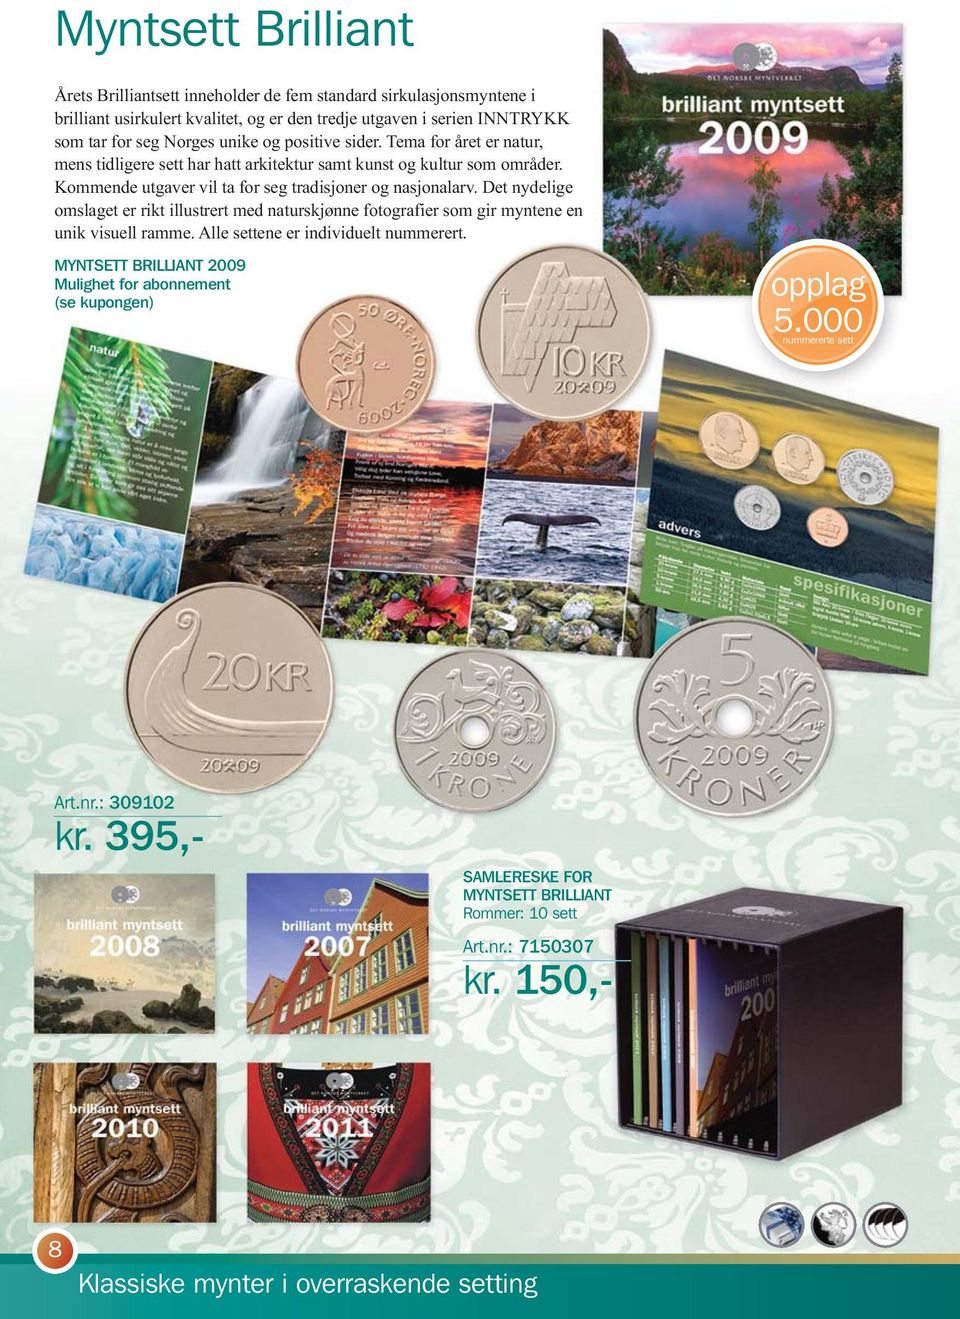 Det nydelige omslaget er rikt illustrert med naturskjønne fotografier som gir myntene en unik visuell ramme. Alle settene er individuelt nummerert.